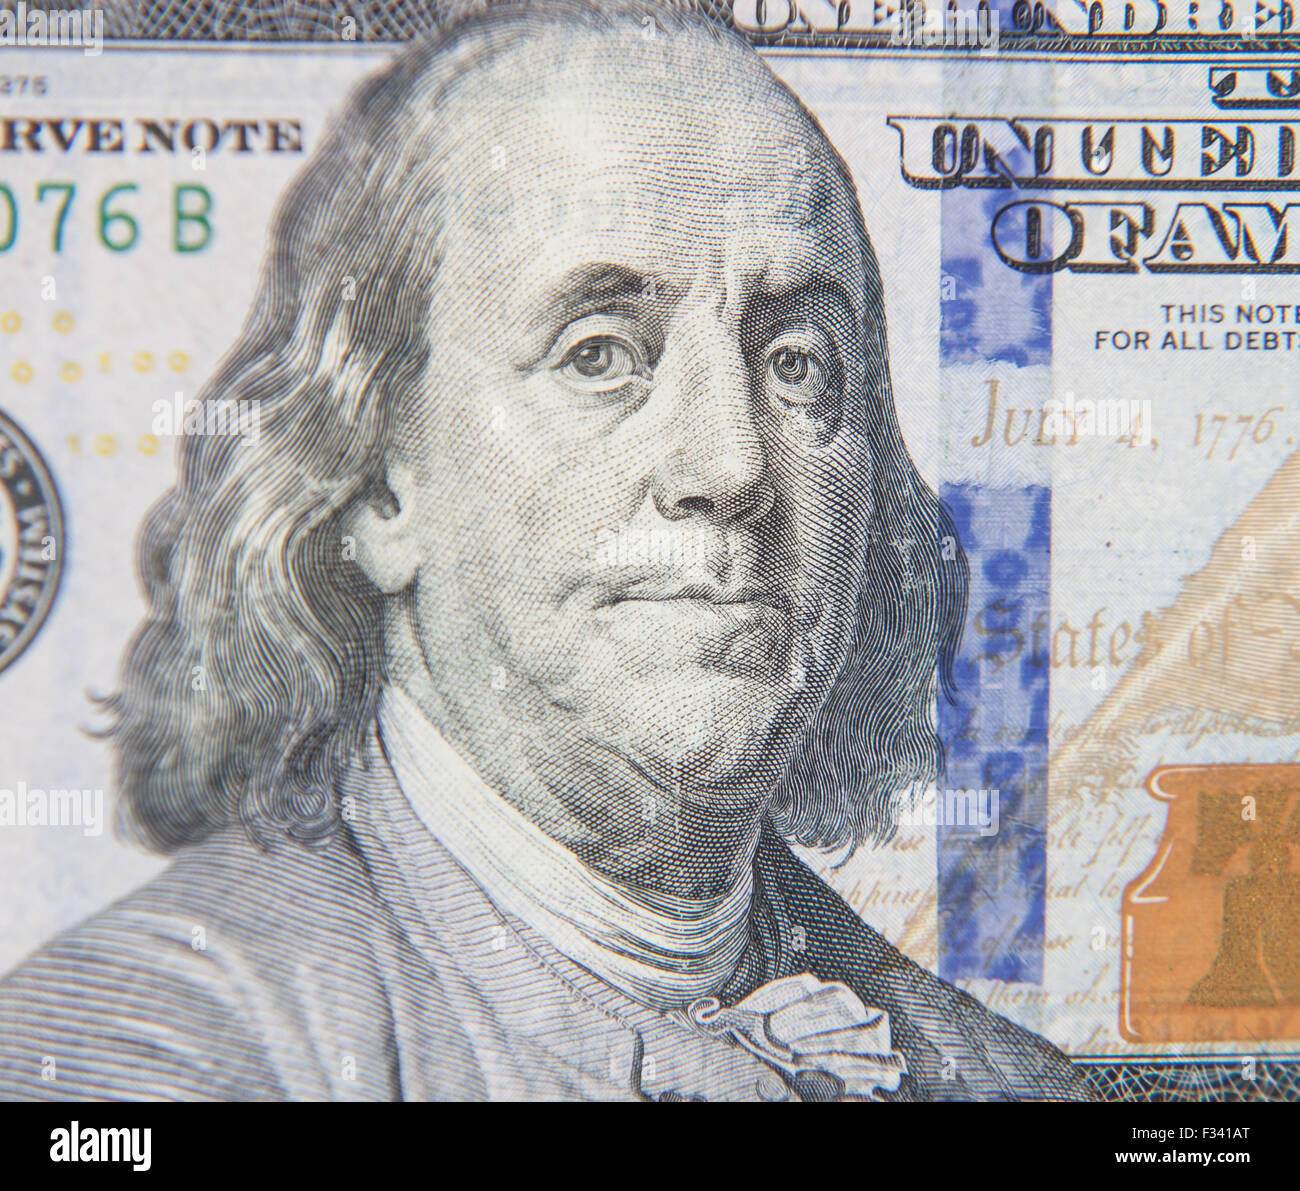 Benjamin Franklin portrait on hundred dollar note Stock Photo